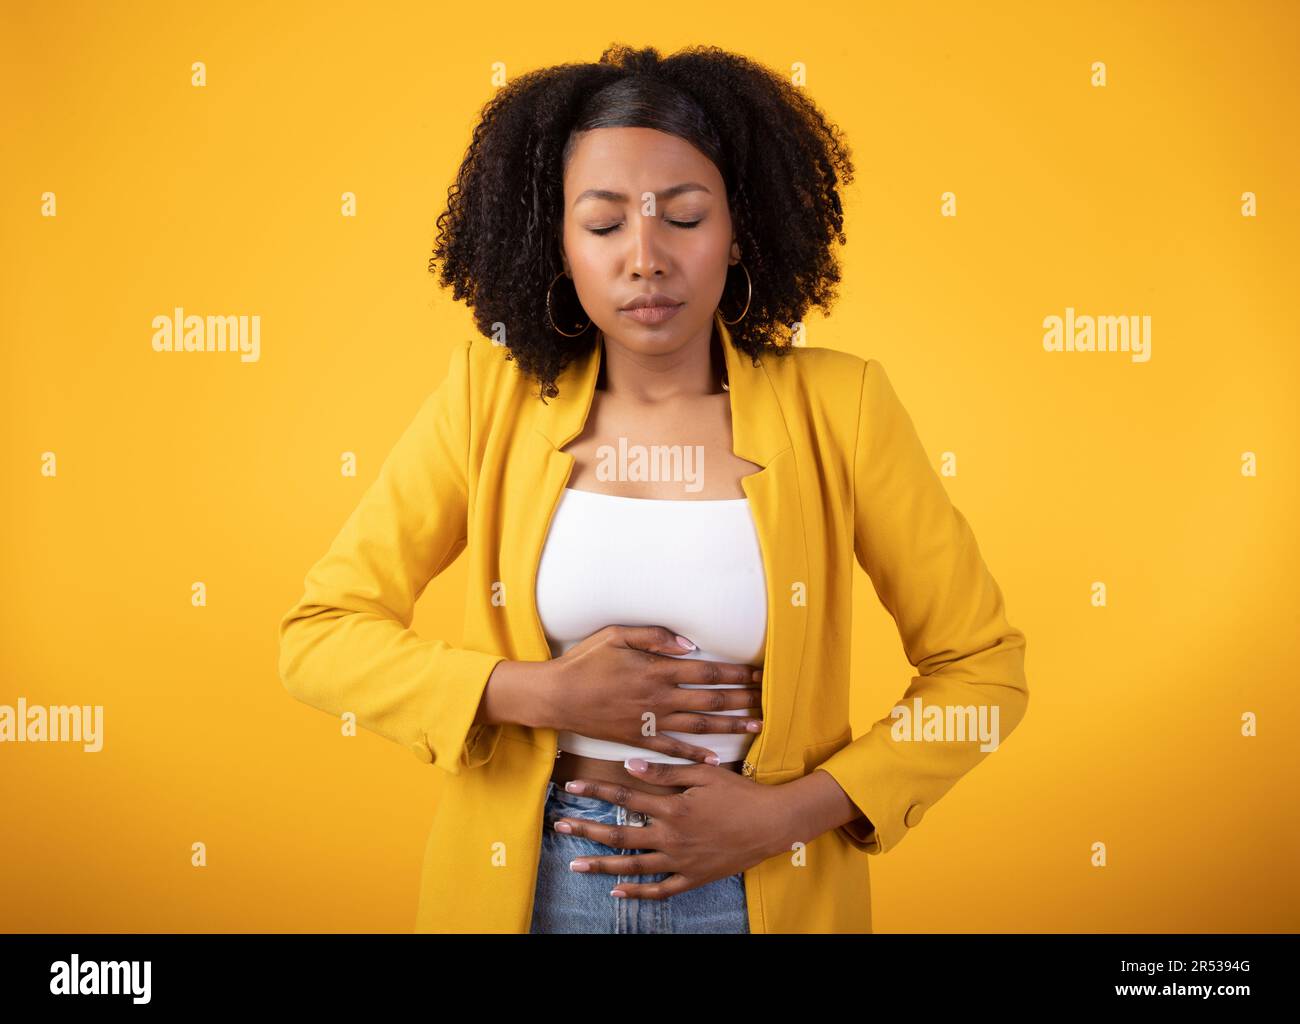 Concept de stomachache. La dame noire touchant le ventre avec les yeux fermés, souffrant de douleur sur fond jaune Banque D'Images